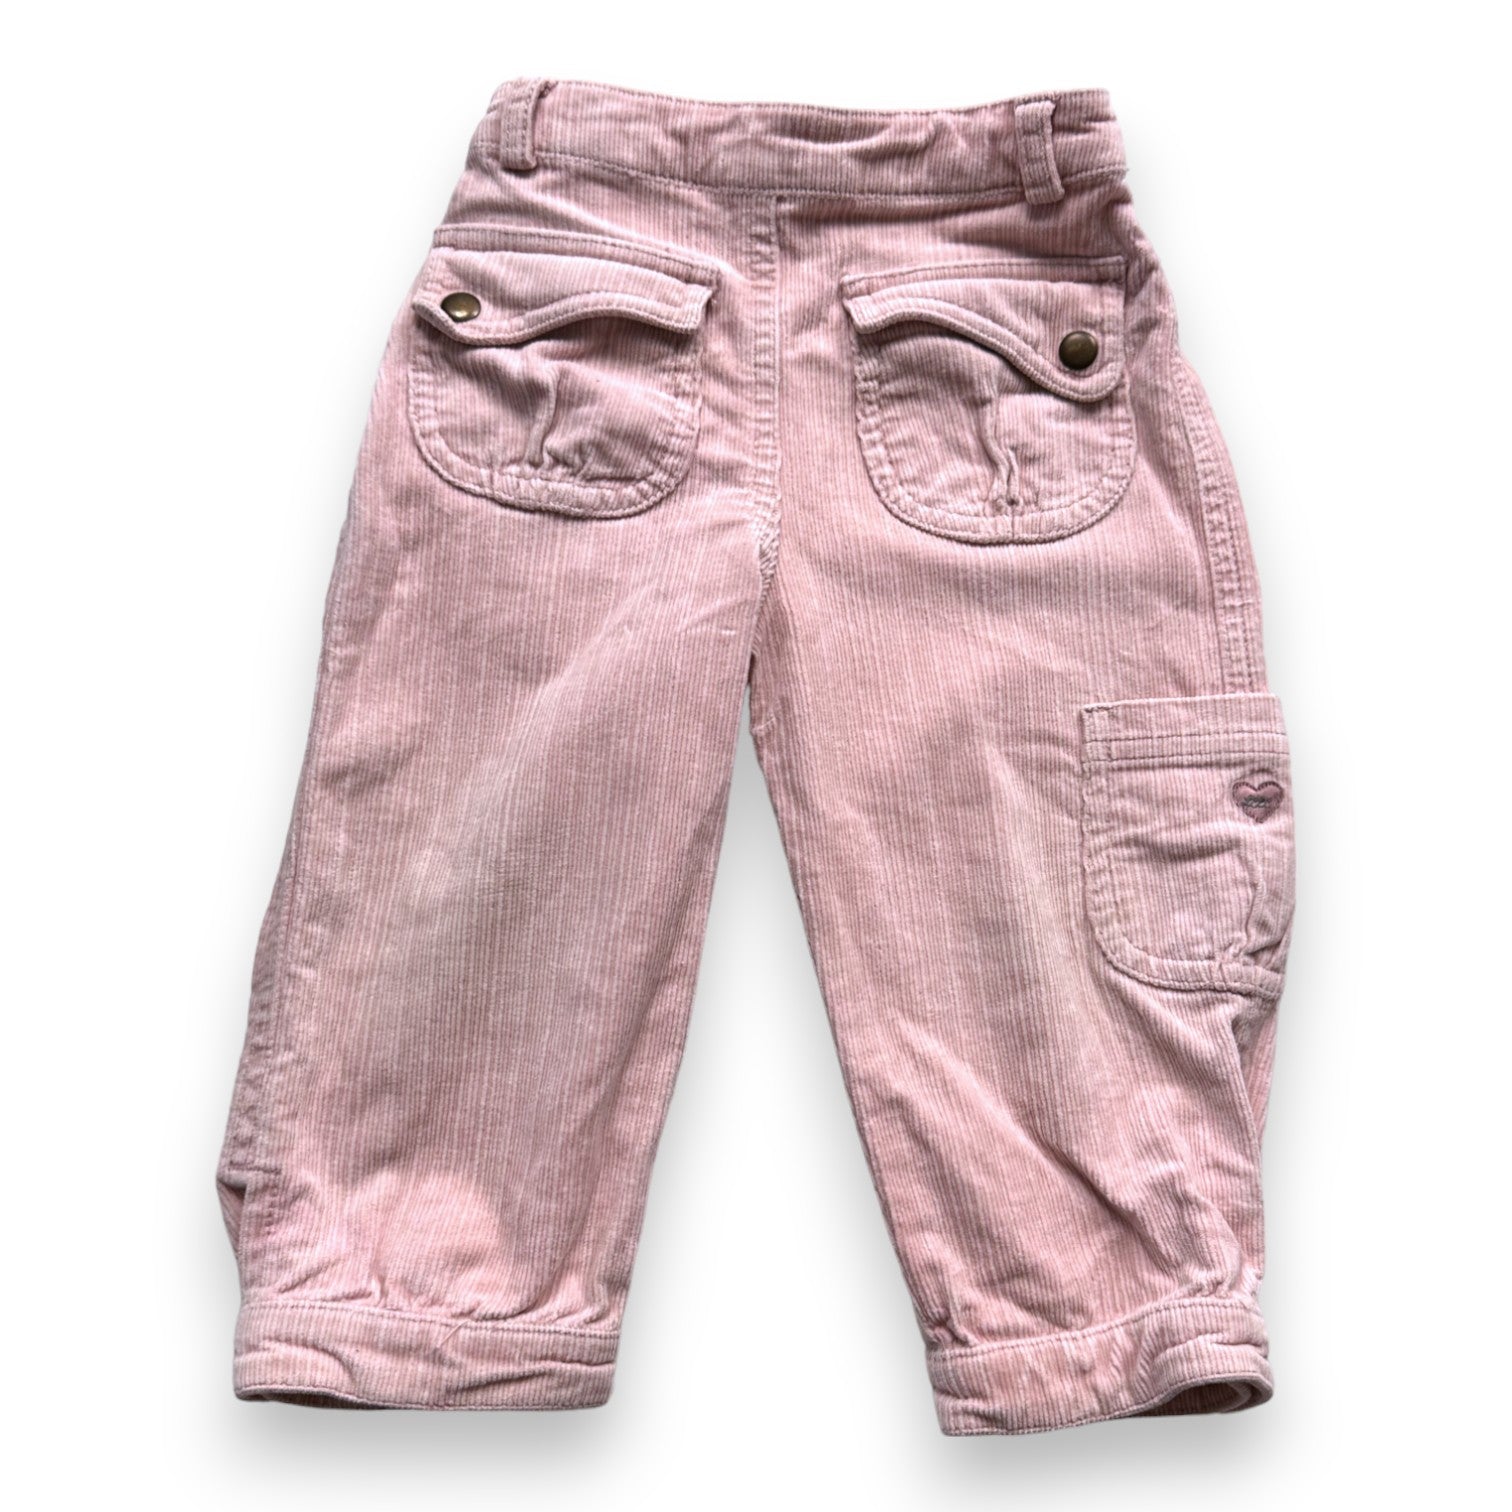 LILI GAUFRETTE - Pantalon rose en velours côtelé - 18 mois